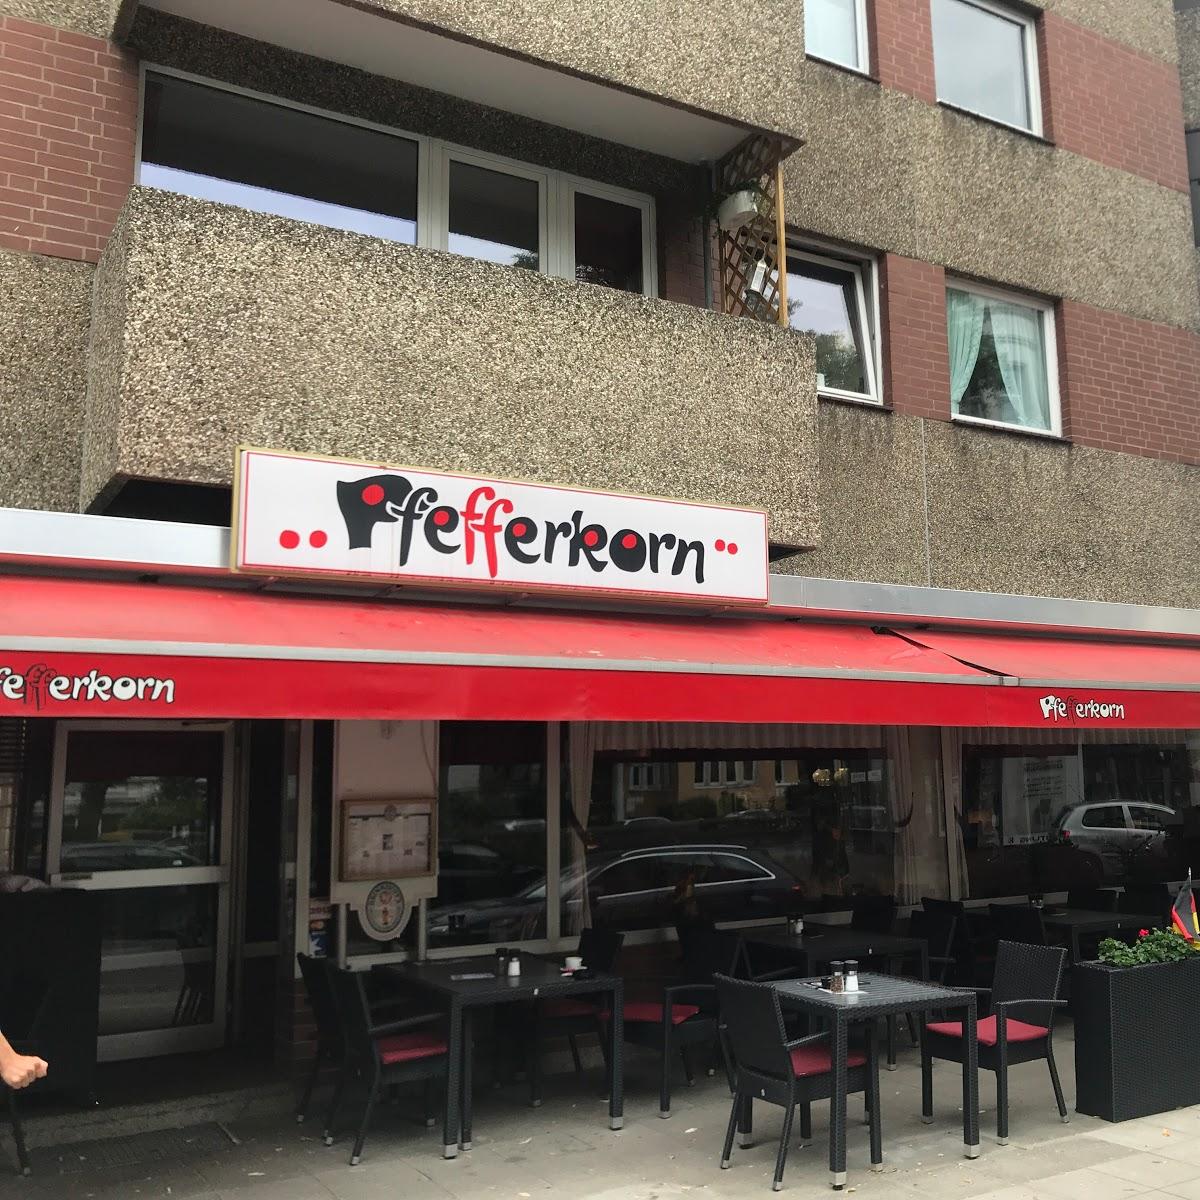 Restaurant "Pfefferkorn Steakhouse" in Hannover